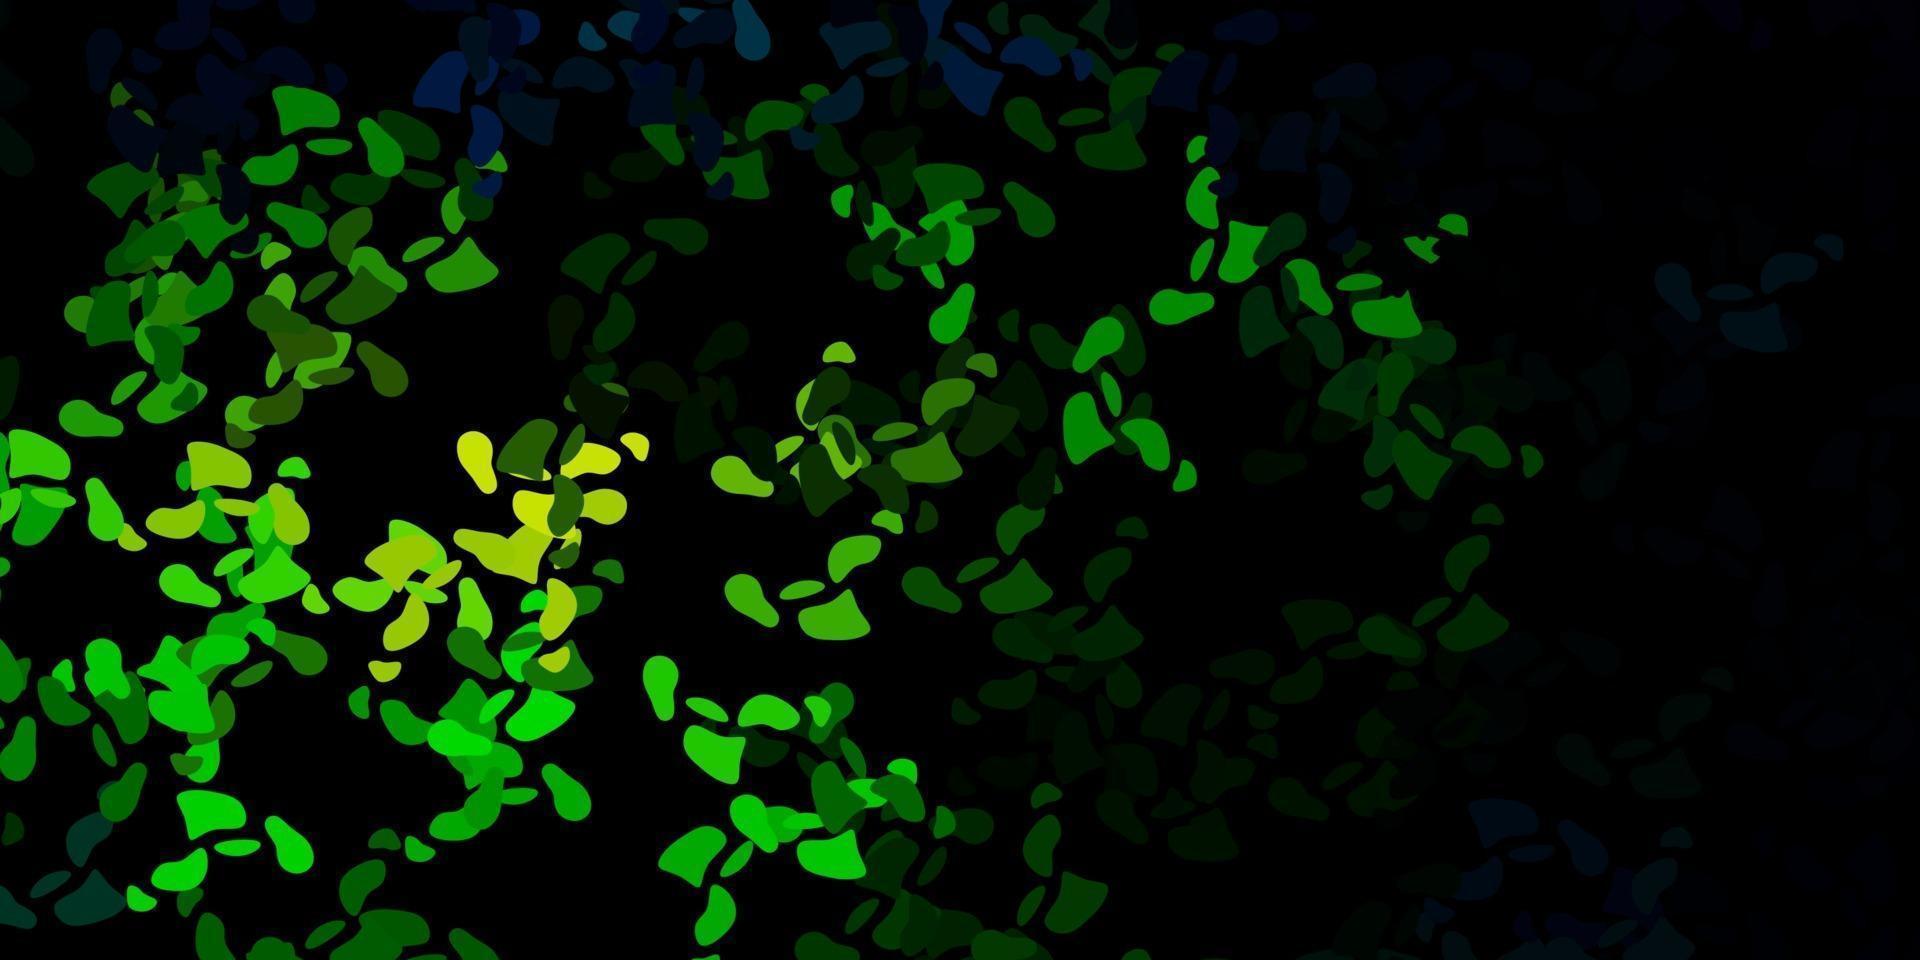 donkerblauw, groen vectormalplaatje met abstracte vormen. vector